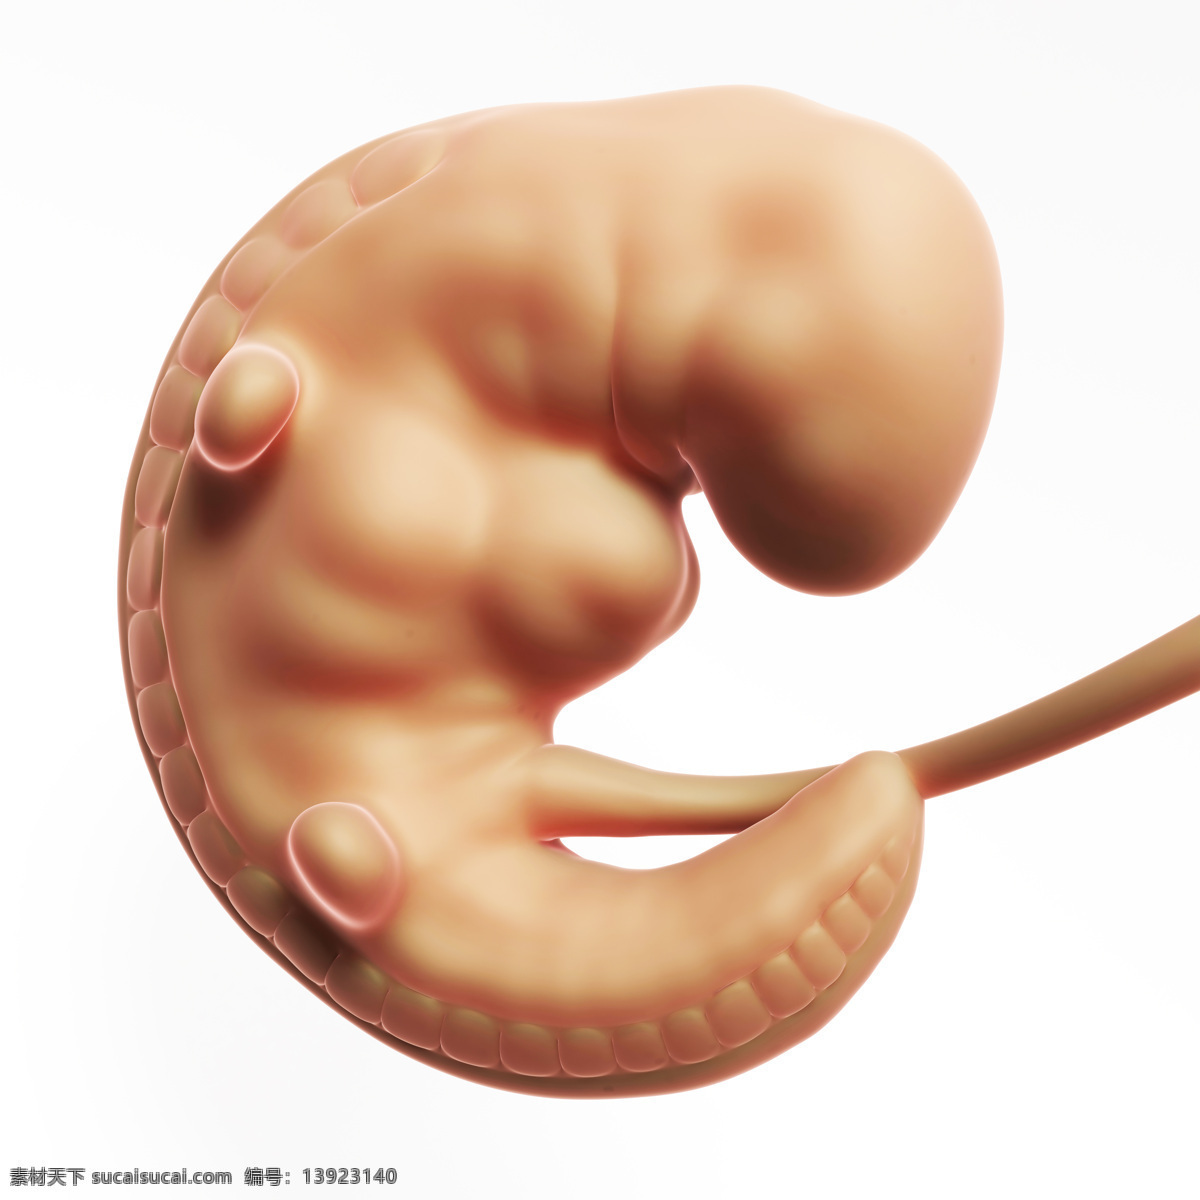 开始 发育 胎儿 婴儿 孕育 胚胎发育 儿童图片 人物图片